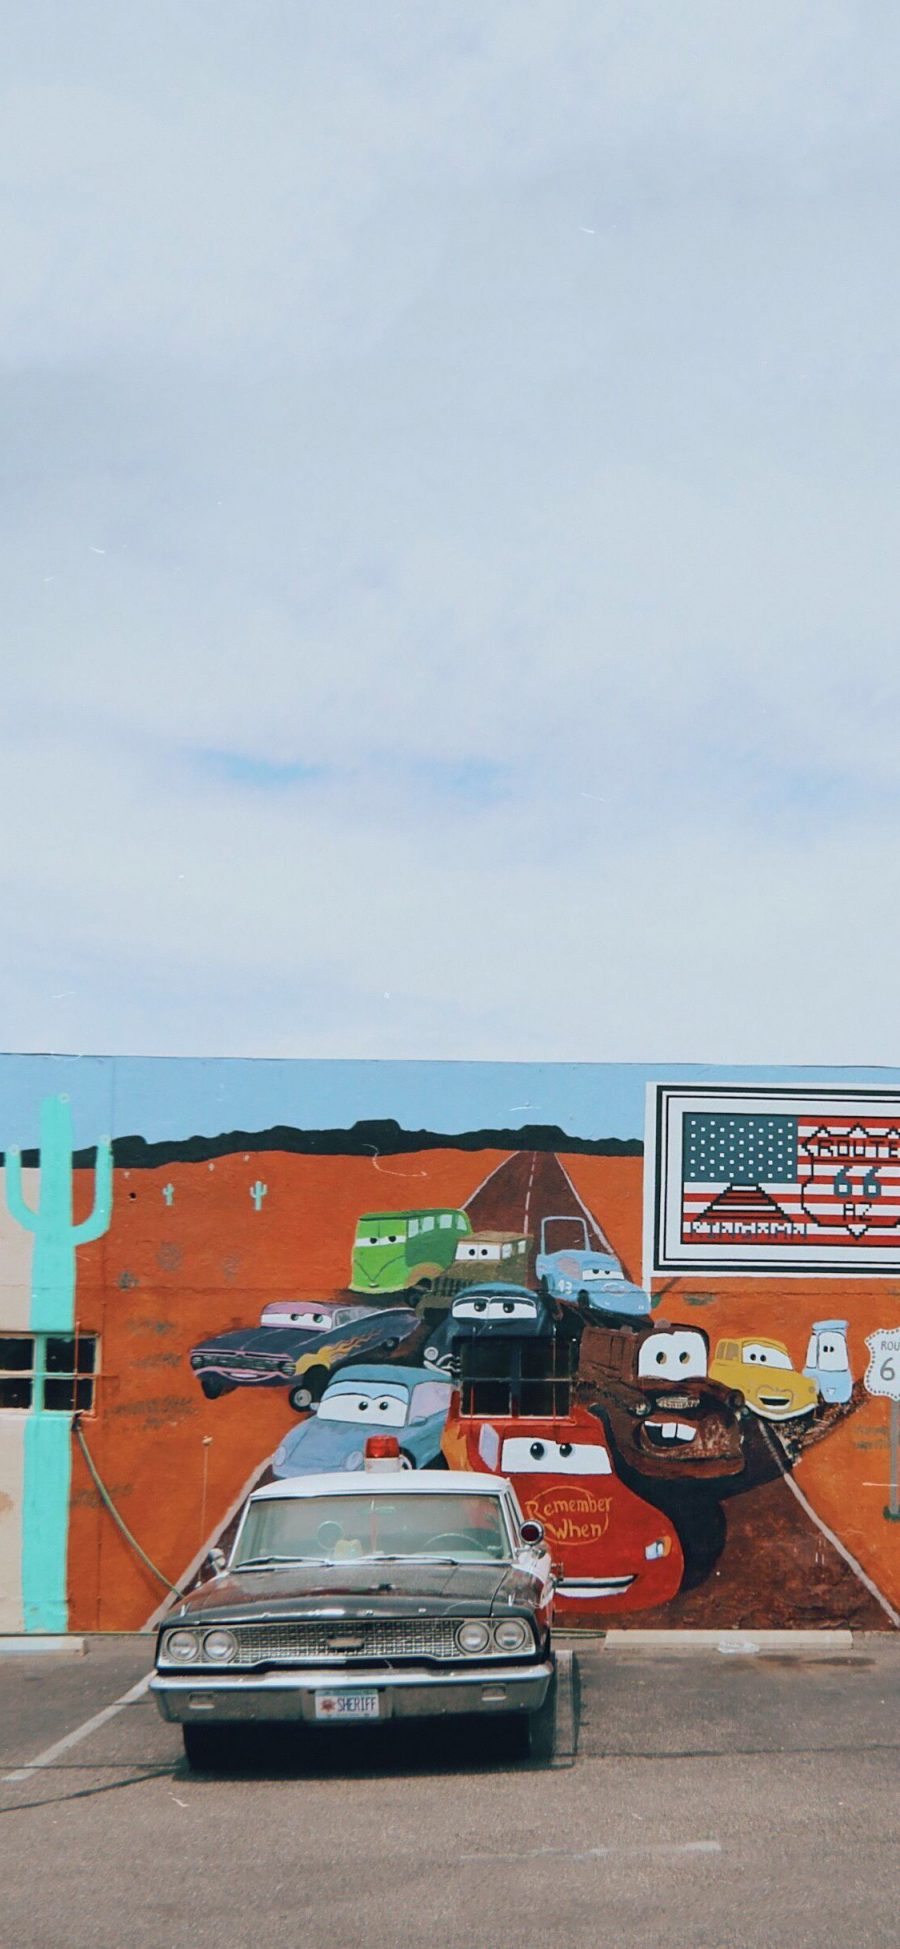 [2436×1125]停车场 美国 涂鸦墙 老爷车 破旧 警车 苹果手机壁纸图片